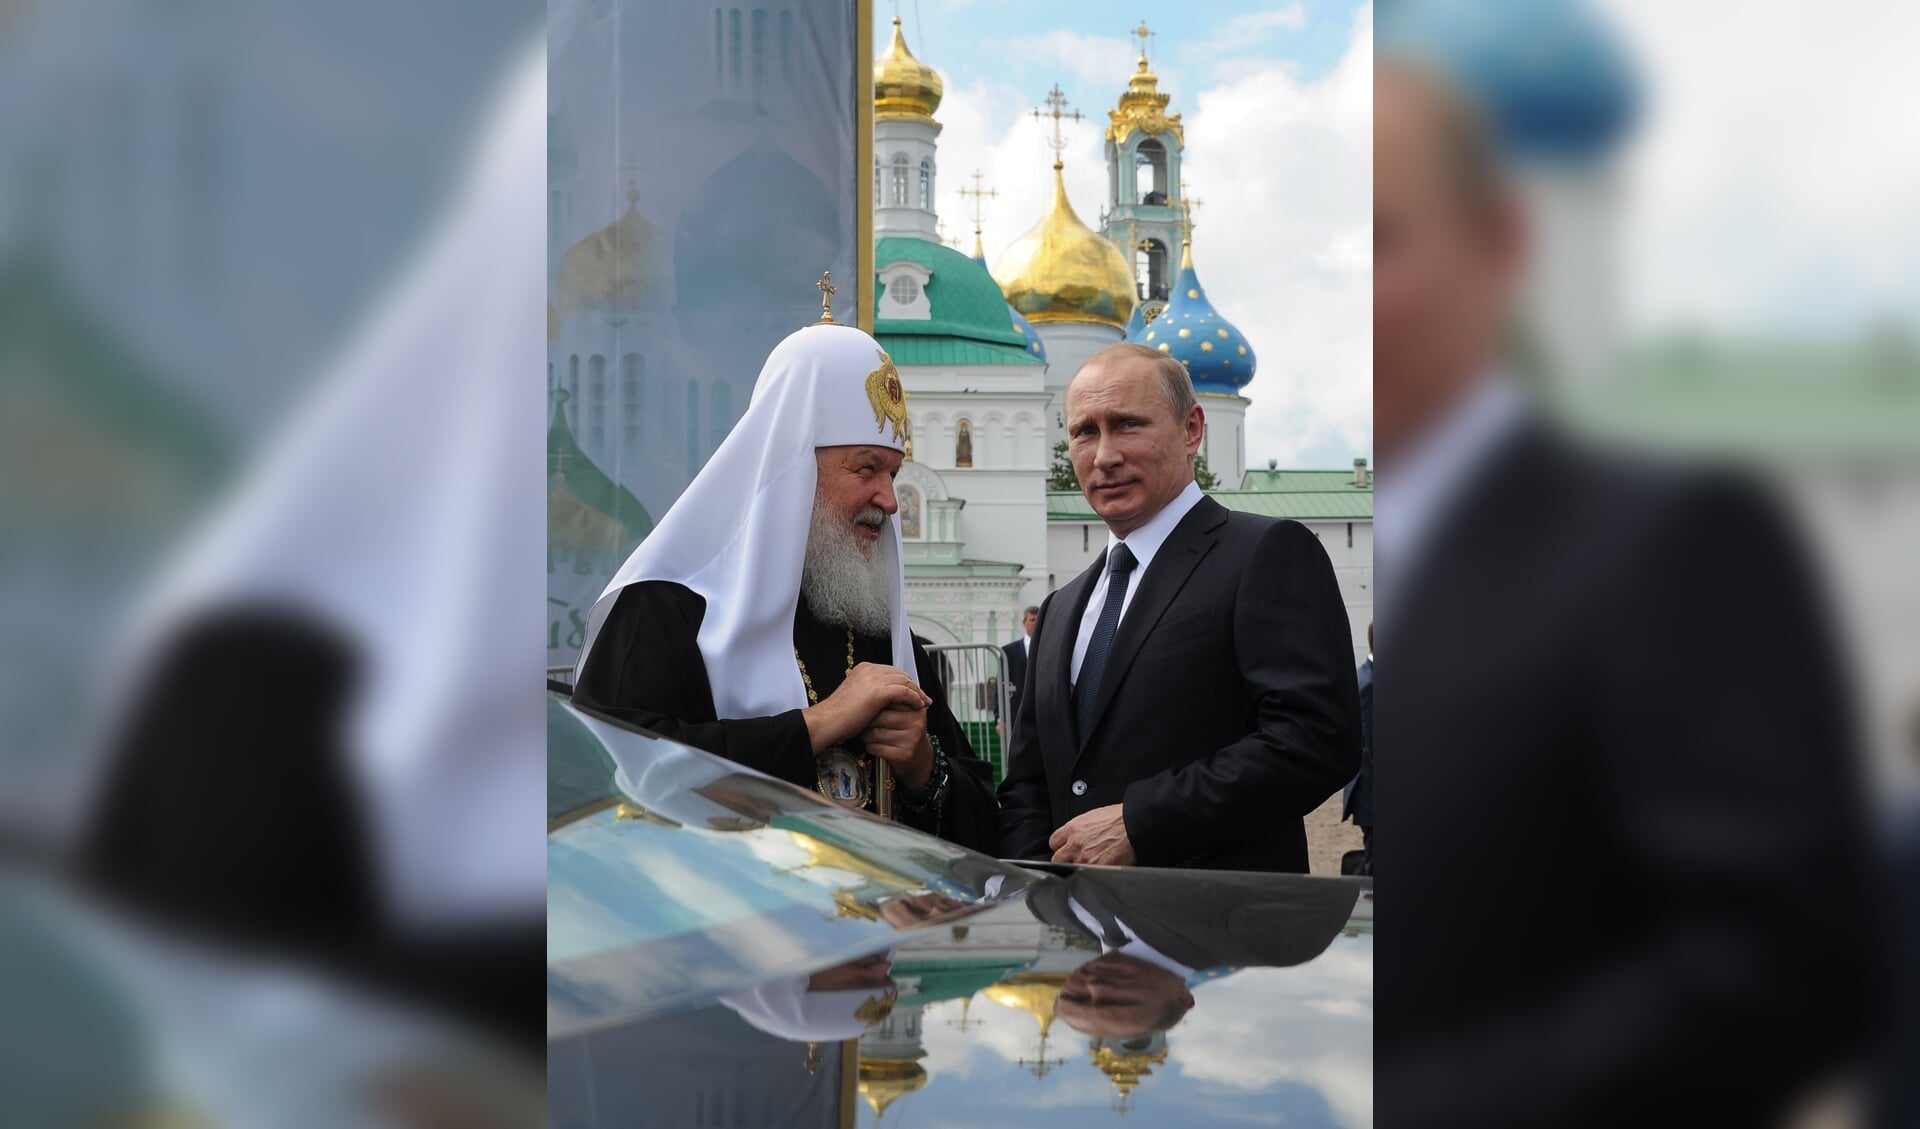 De Russisch-Orthodoxe patriarch Kiril en president Putin ontmoeten elkaar in Sergiev Posad.